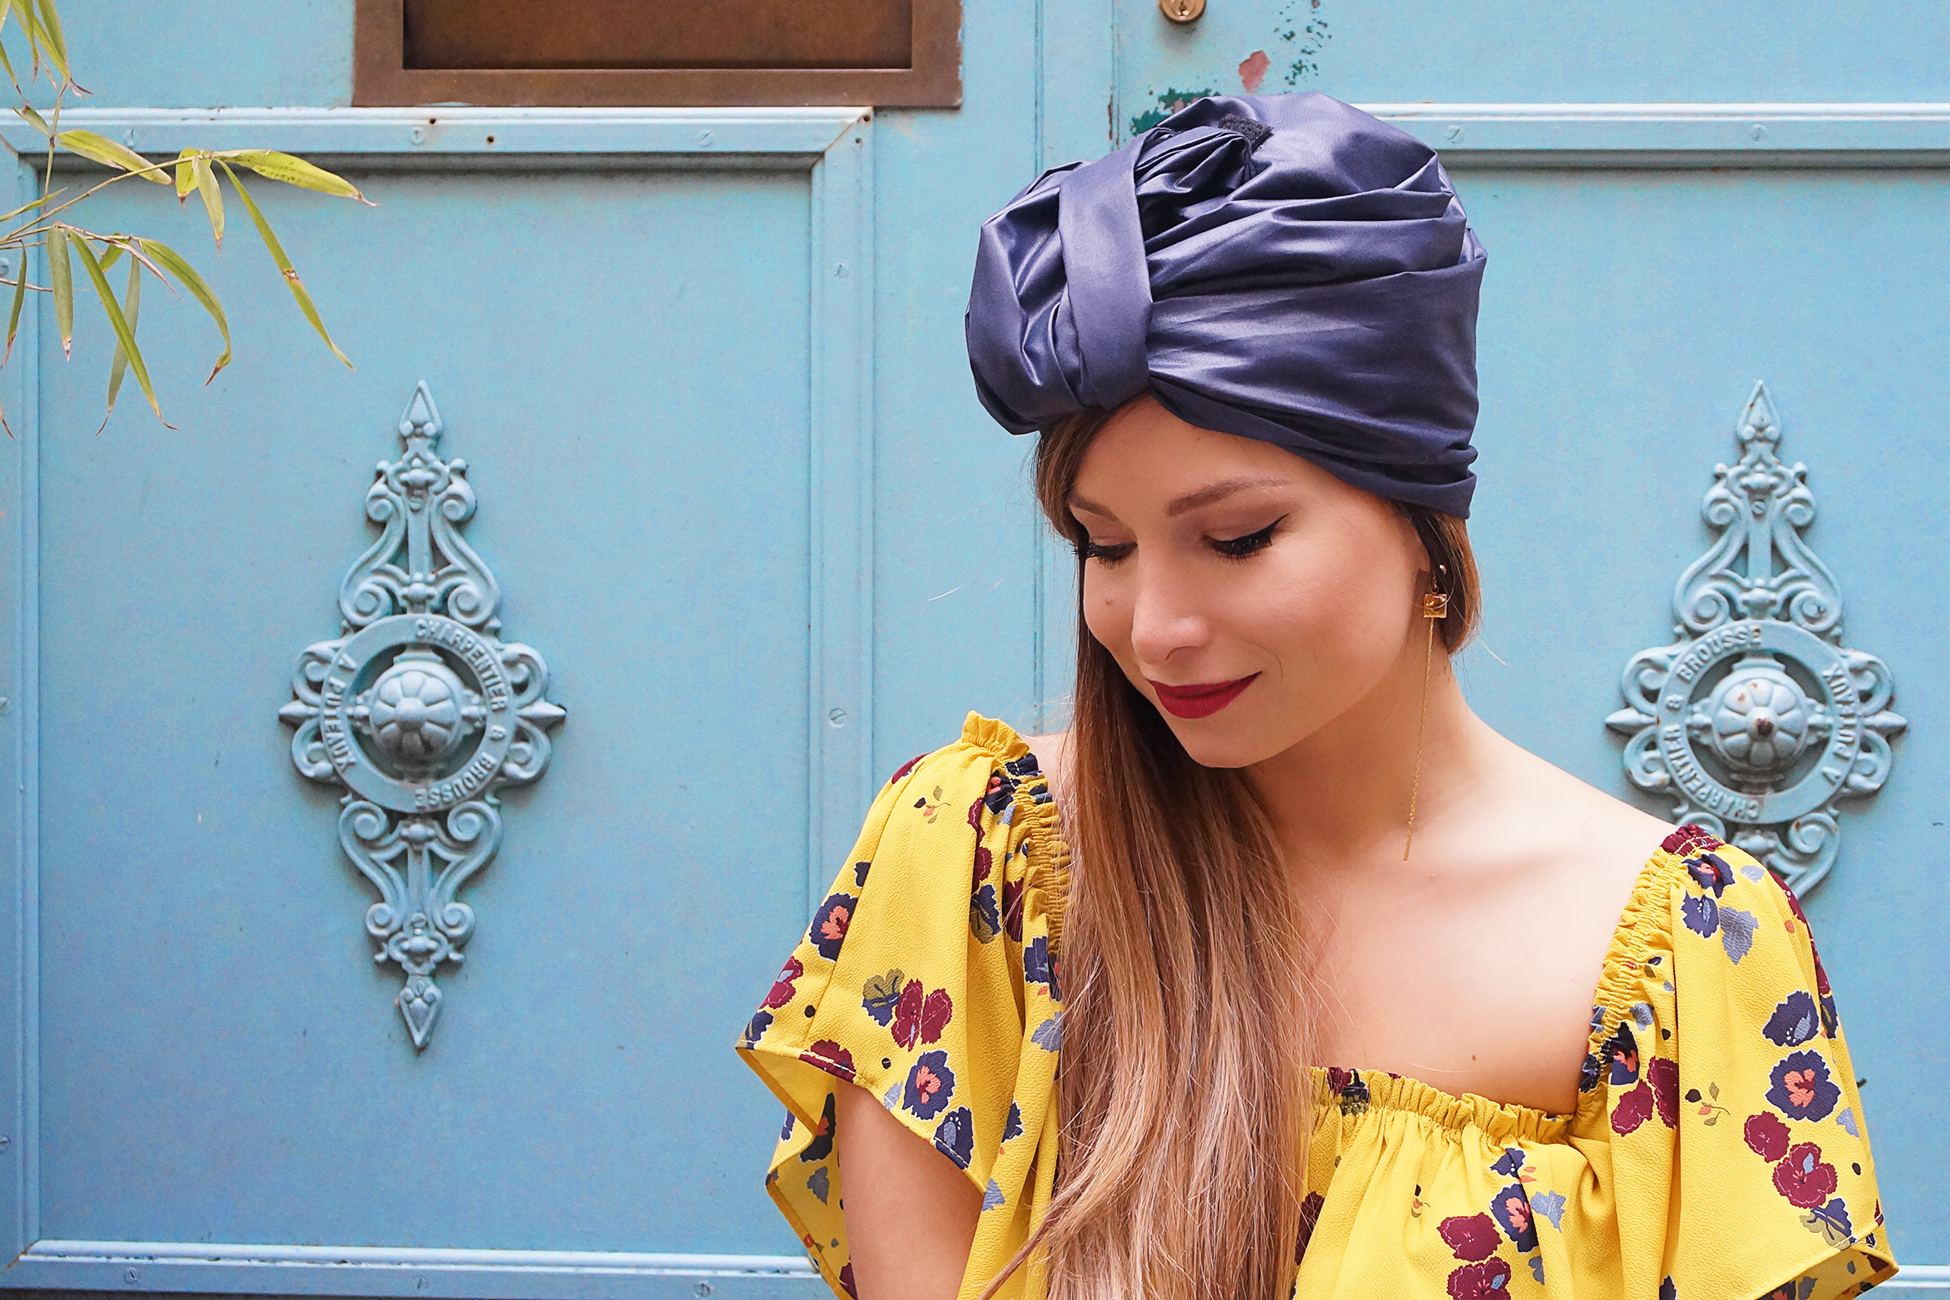 comment porter le turban blog mode